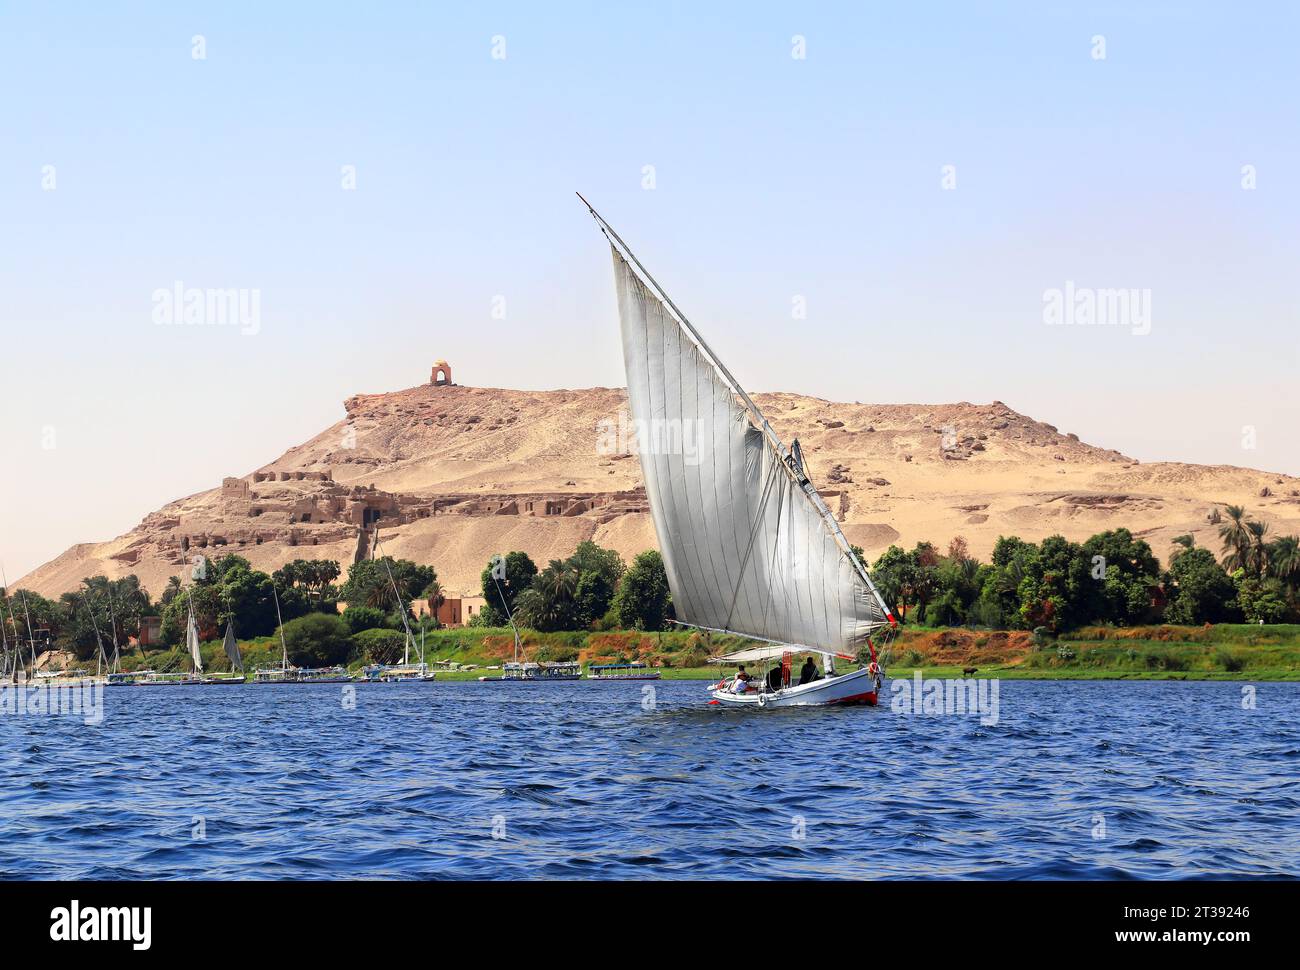 Bateau à voile traditionnel felouque, fleuve du Nil près d'Assouan, Egypte. Une attraction touristique célèbre - promenade en bateau à voile Banque D'Images